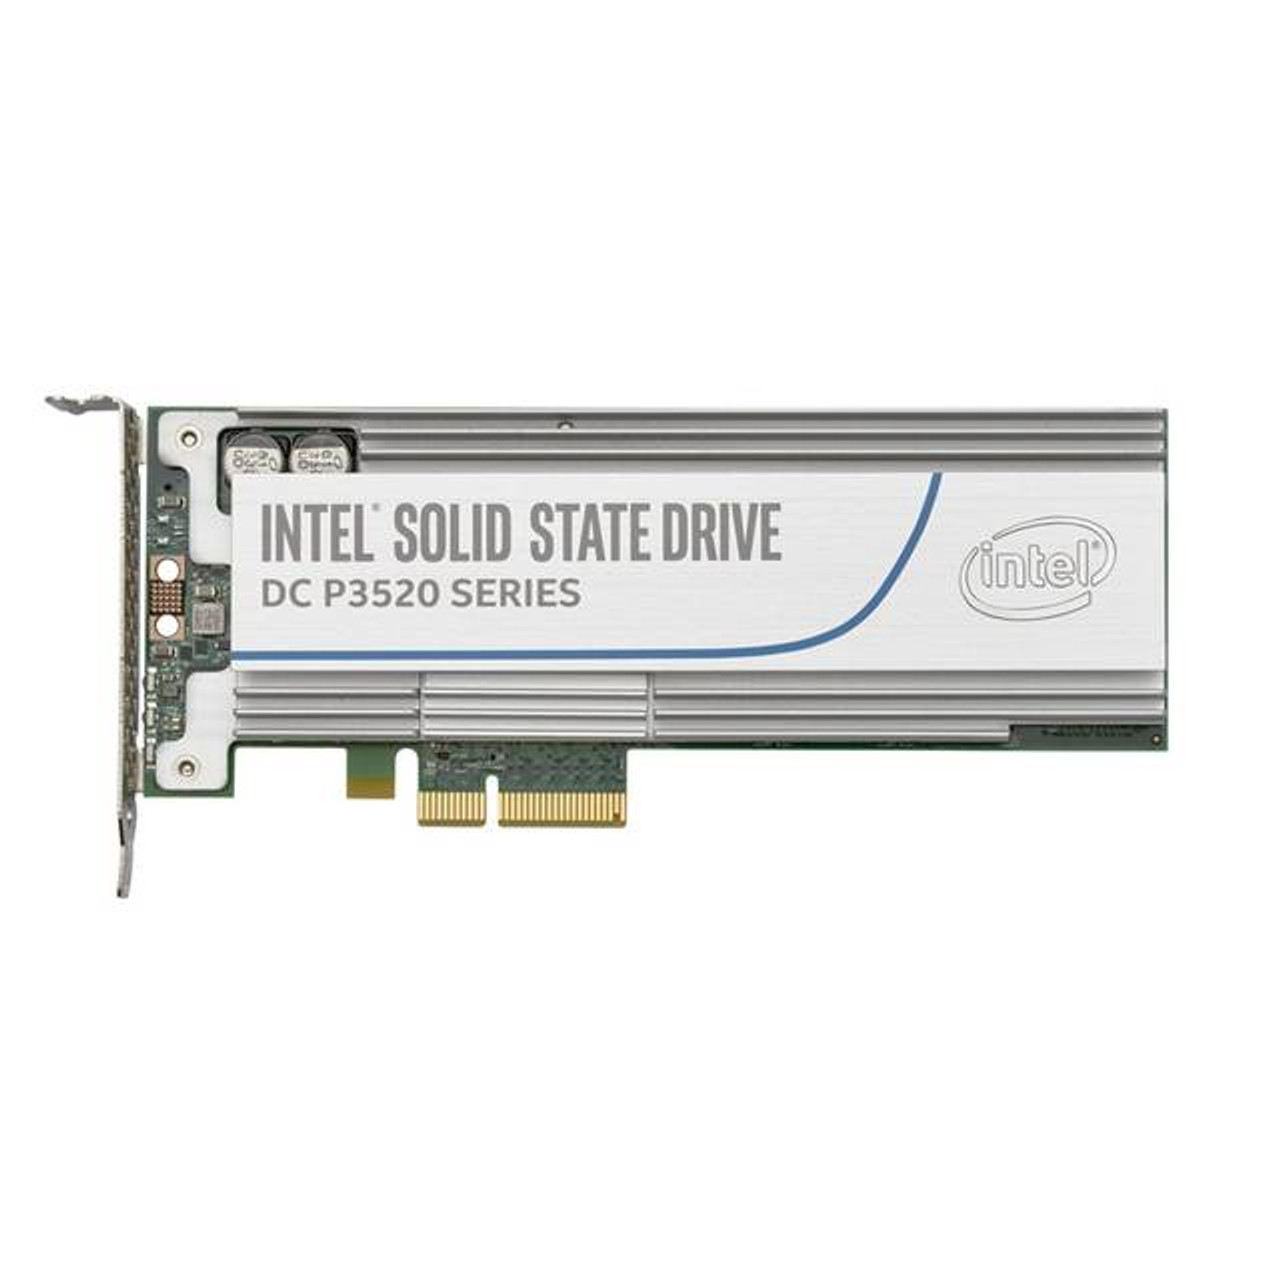 Intel DC P3520 Series SSDPEDMX020T701 2TB HHHL (CEM2.0) PCI-Express 3.0 x4 Solid State Drive (MLC)